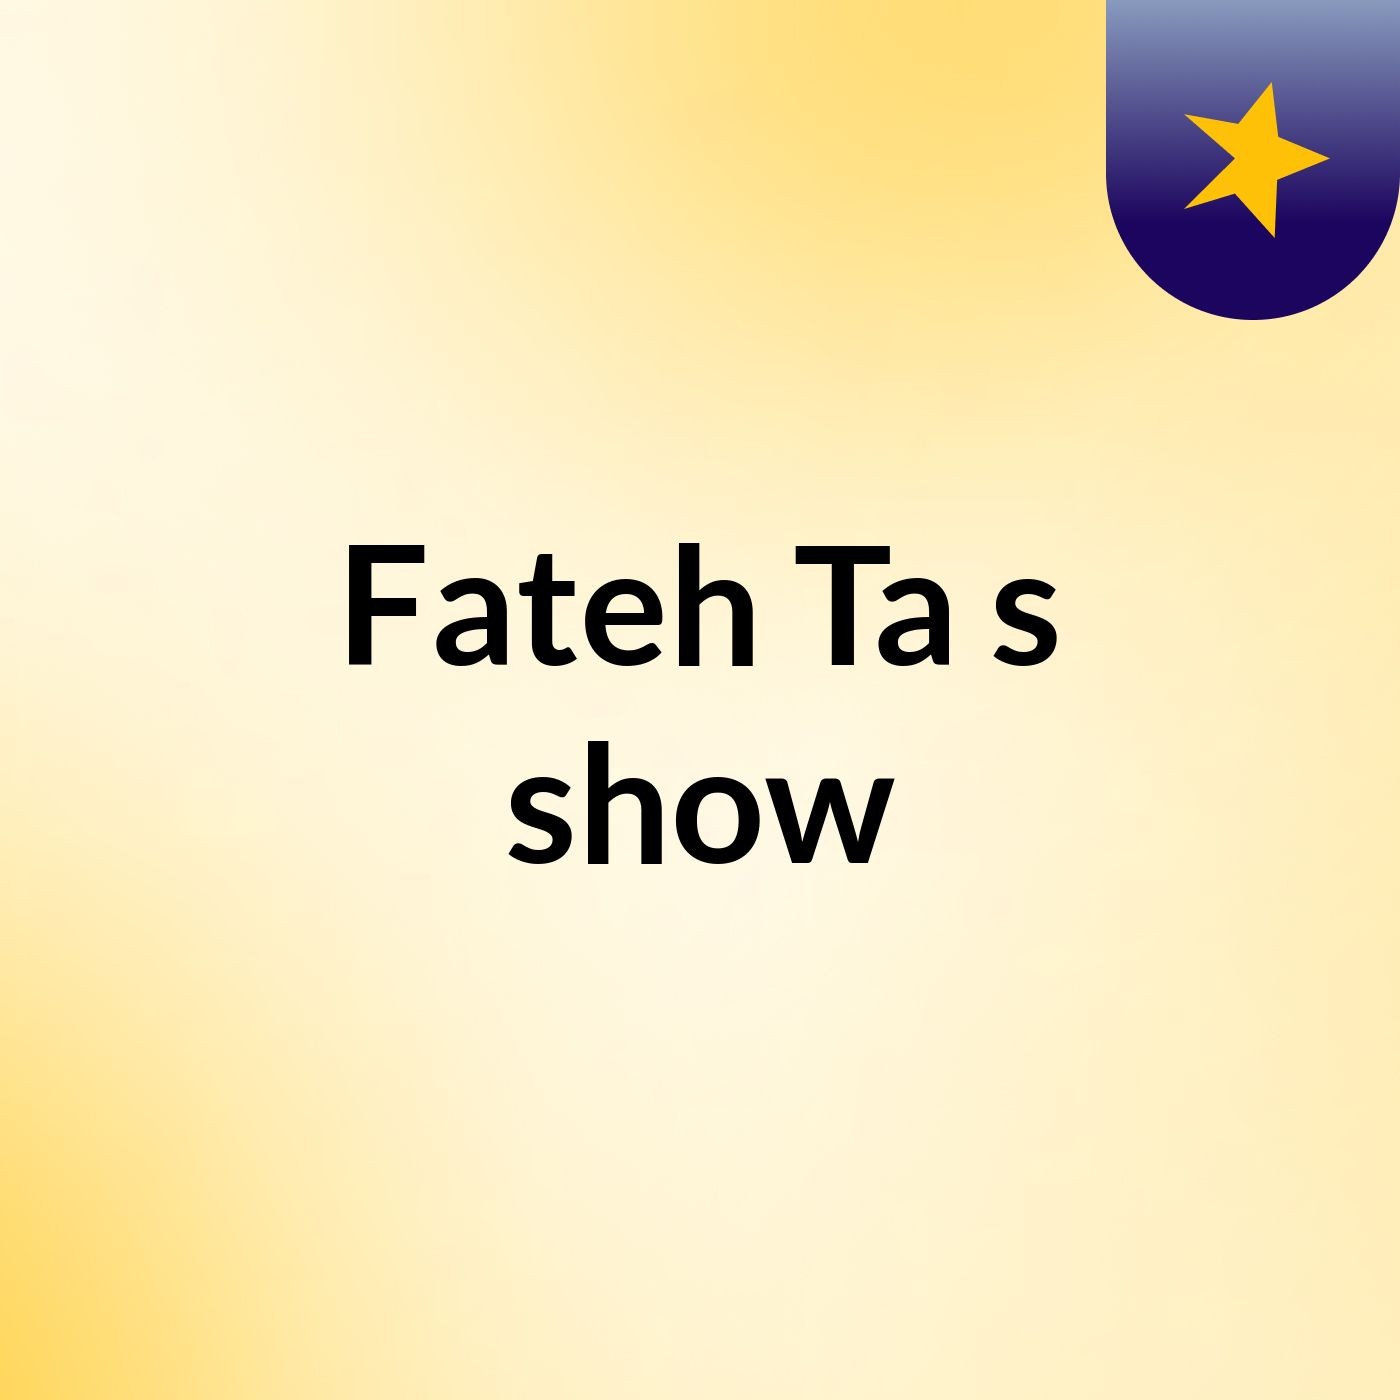 Fateh Ta's show